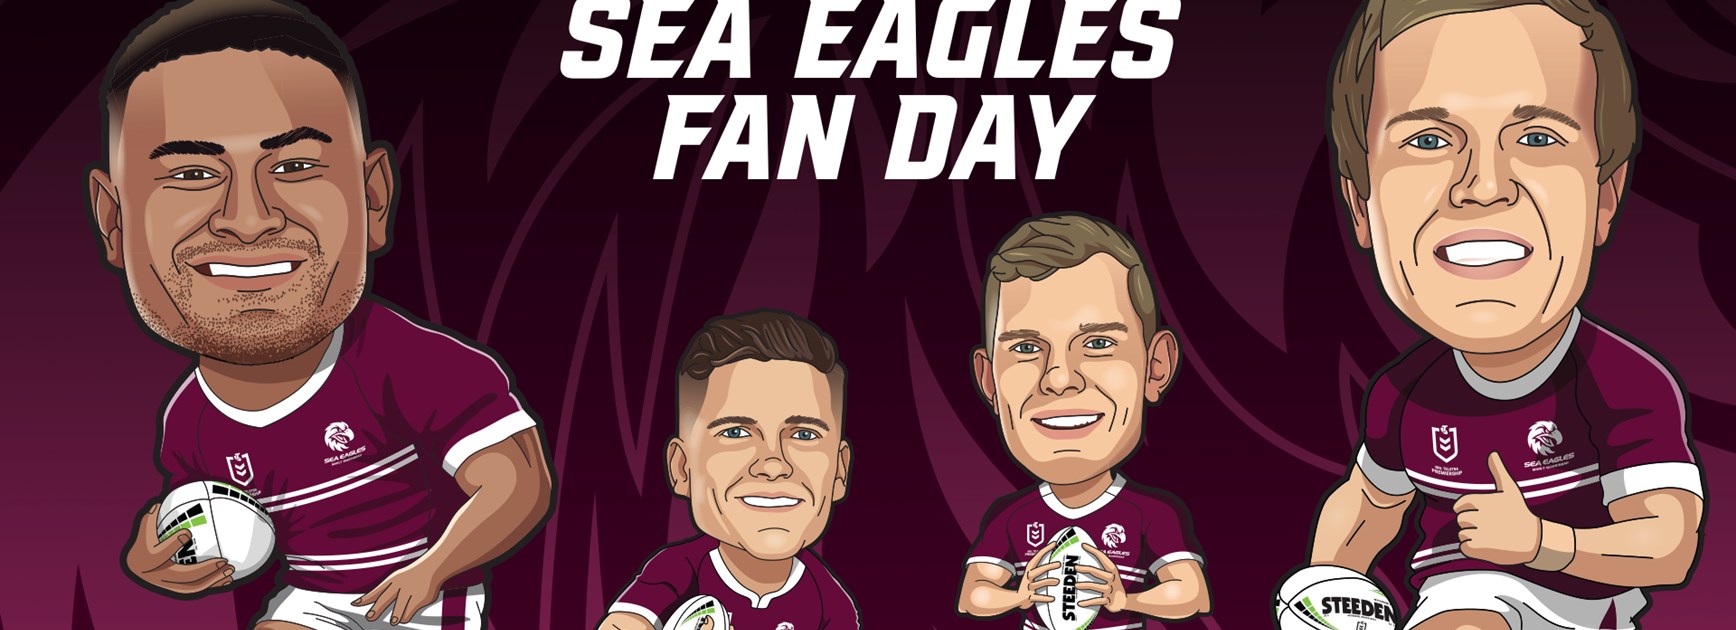 Sea Eagles Fan Day